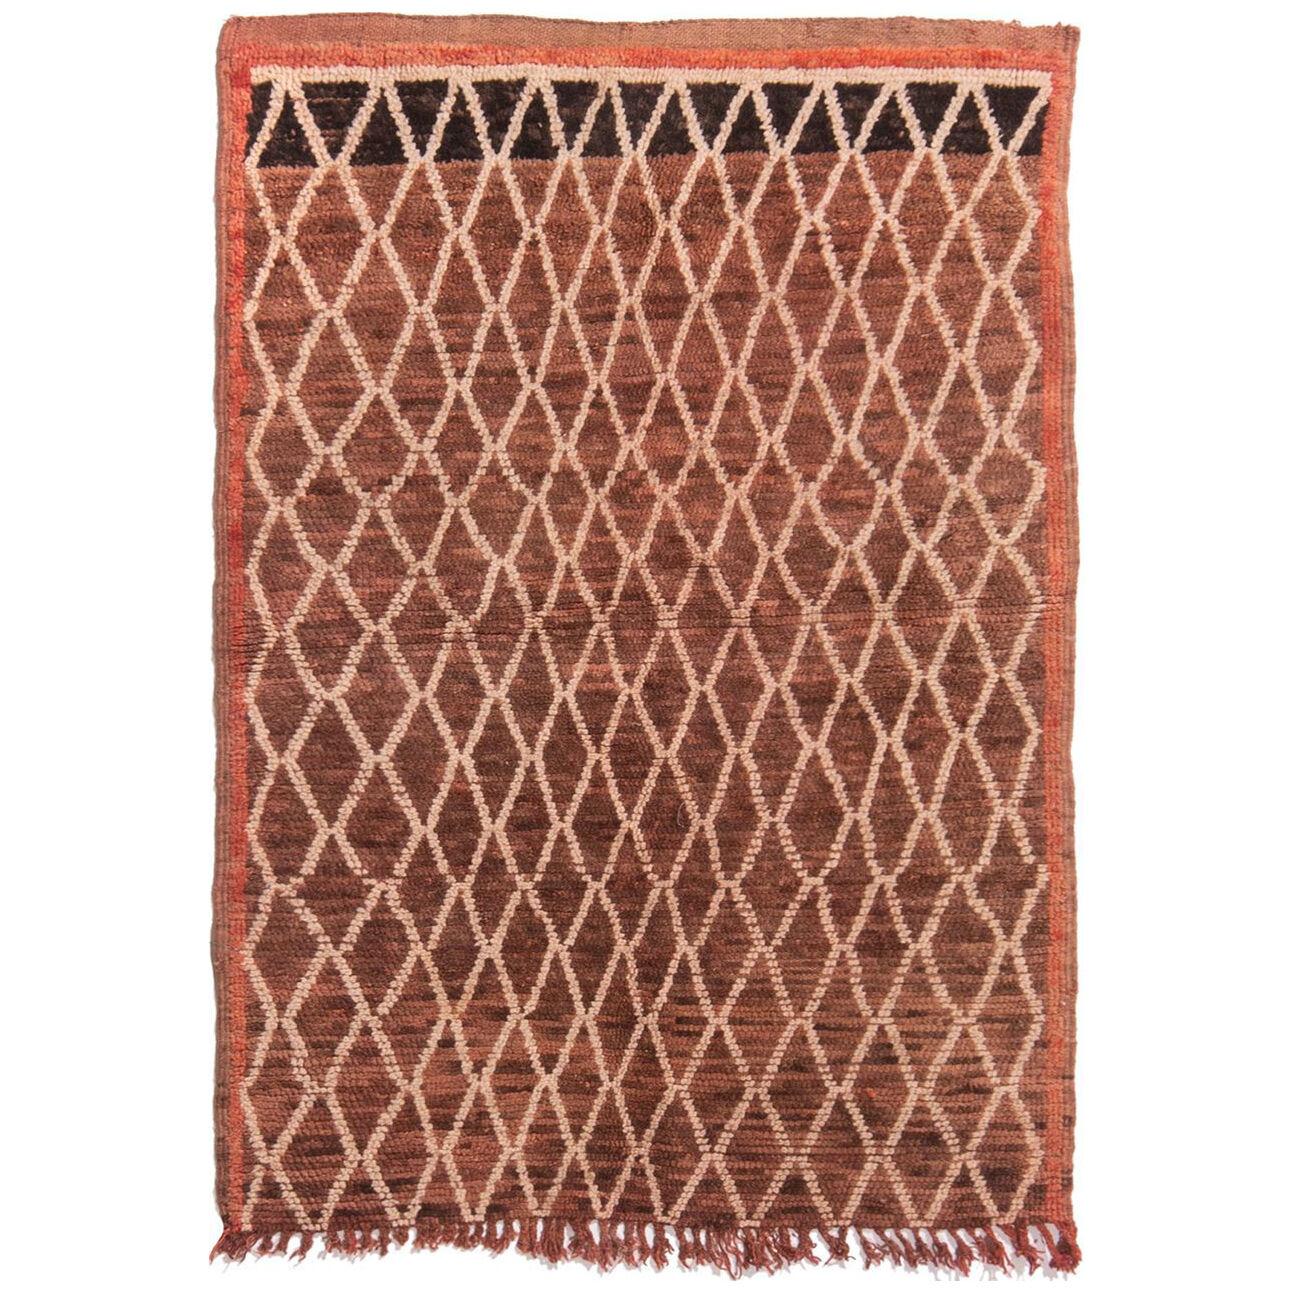 Vintage Mid-Century Moroccan Geometric Beige Brown Wool Kilim Rug